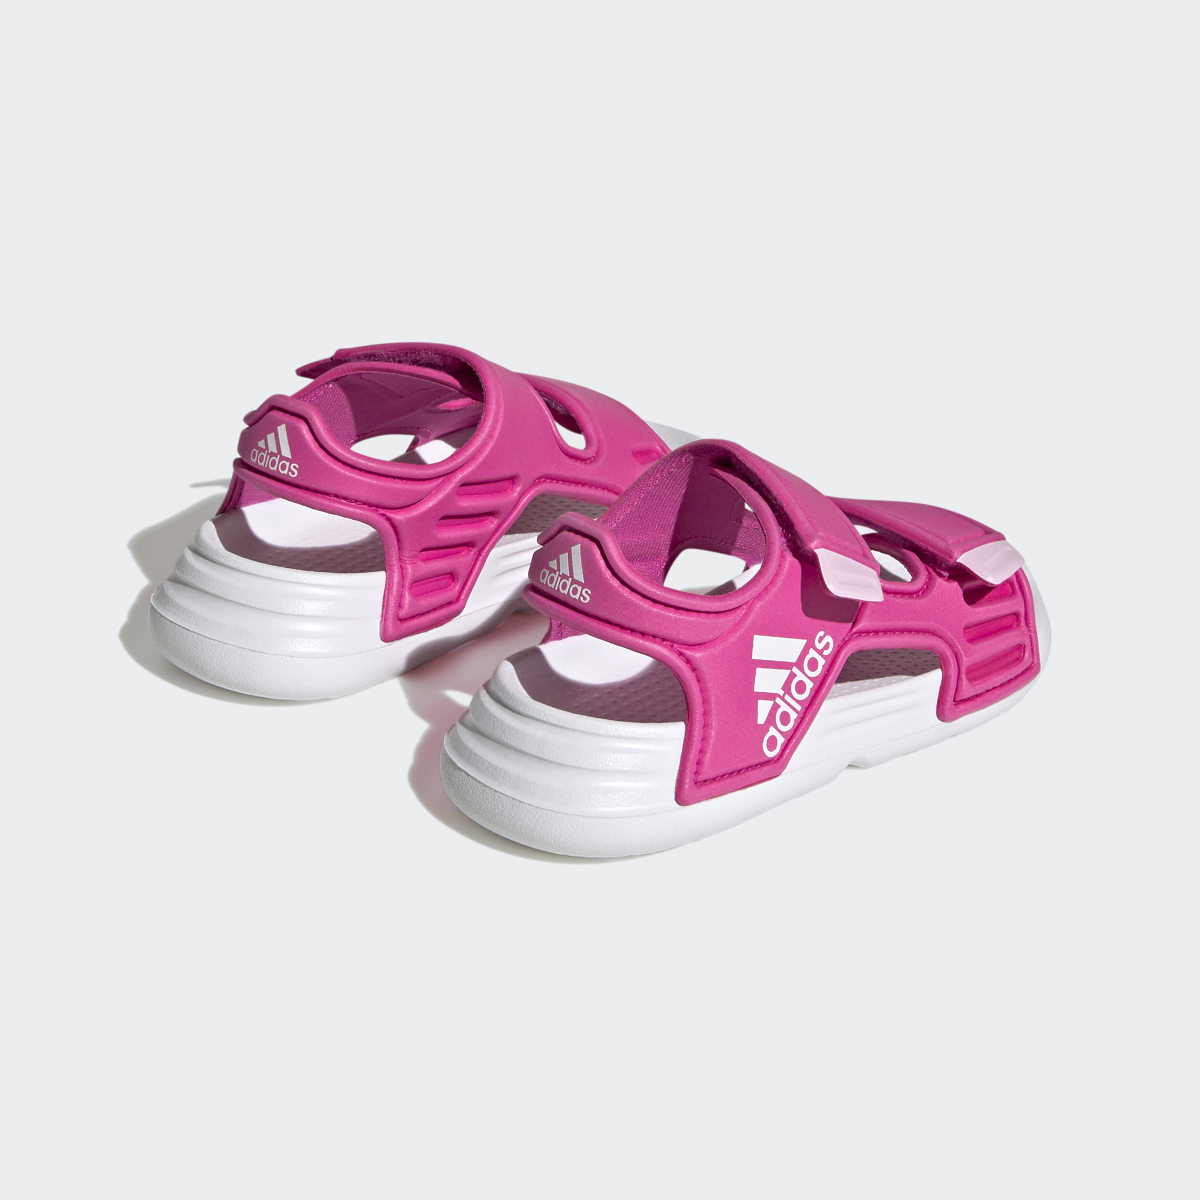 Adidas Altaswim Sandals. 6